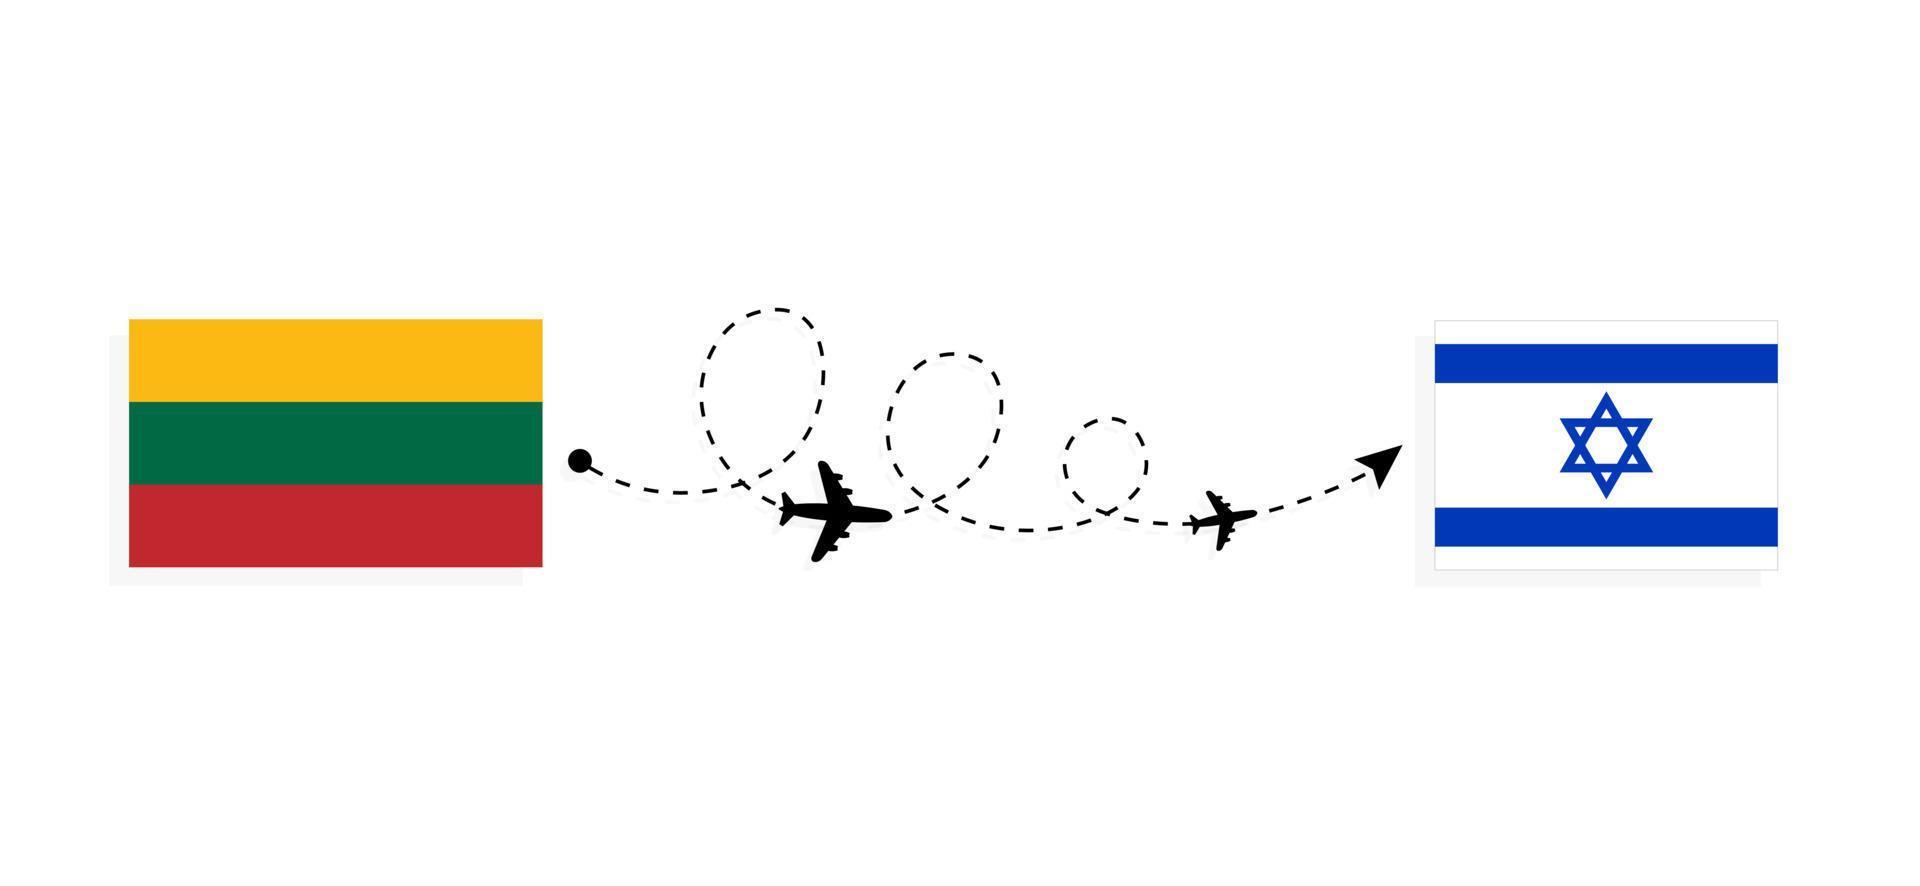 flyg och resor från Litauen till Israel med resekoncept för passagerarflygplan vektor